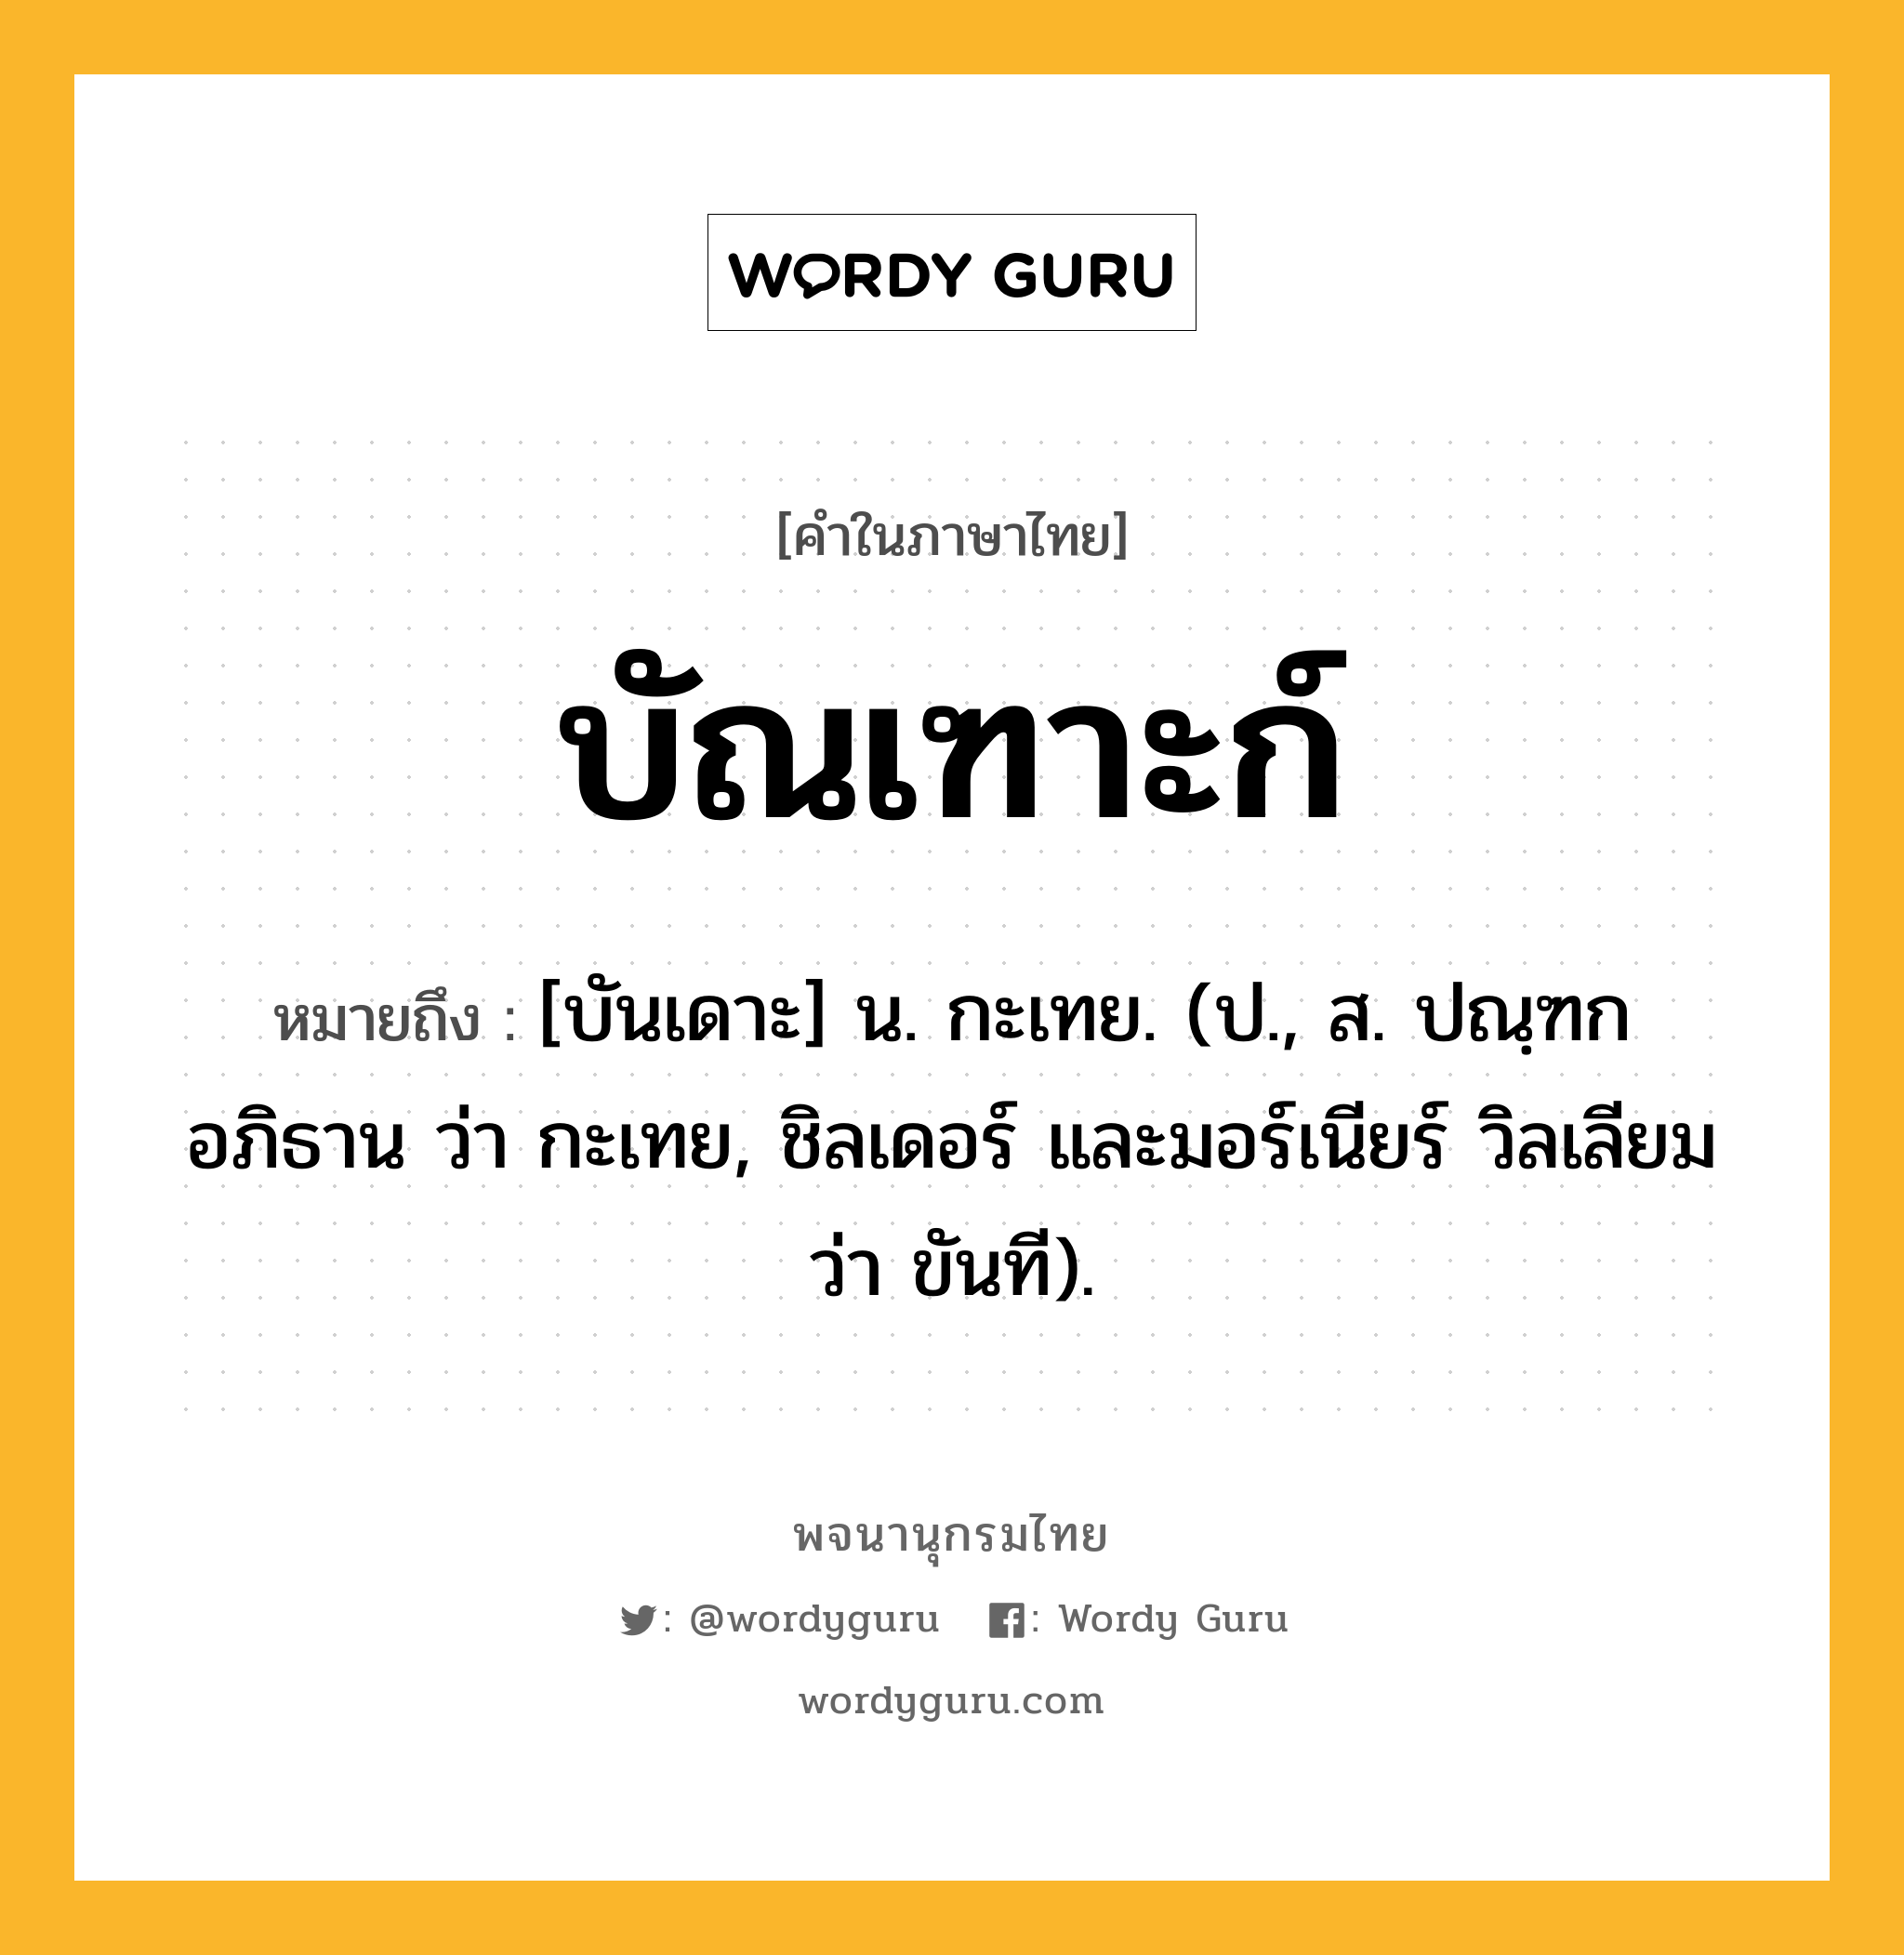 บัณเฑาะก์ หมายถึงอะไร?, คำในภาษาไทย บัณเฑาะก์ หมายถึง [บันเดาะ] น. กะเทย. (ป., ส. ปณฺฑก อภิธาน ว่า กะเทย, ชิลเดอร์ และมอร์เนียร์ วิลเลียม ว่า ขันที).